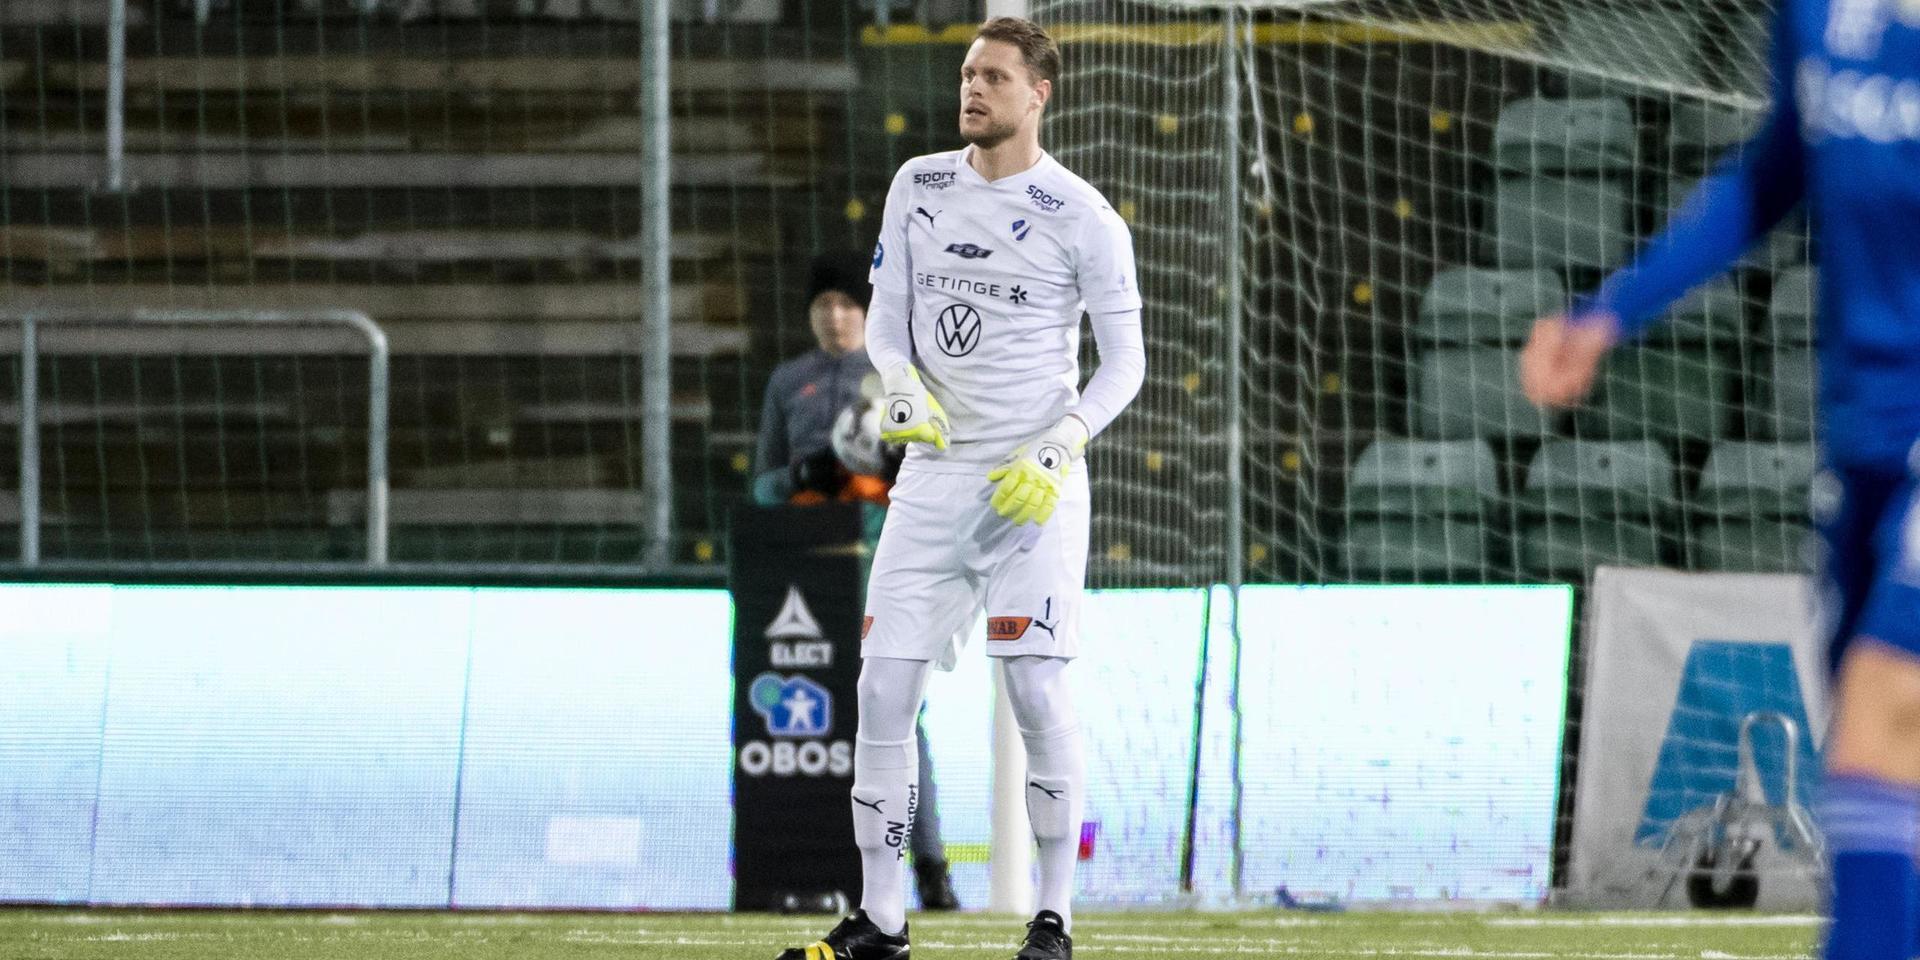 HBK:s målvakt Malkolm Nilsson Säfqvist var rörd efter HBK:s avancemang till Allsvenskan efter ännu en hållen nolla - den 18:e i år.